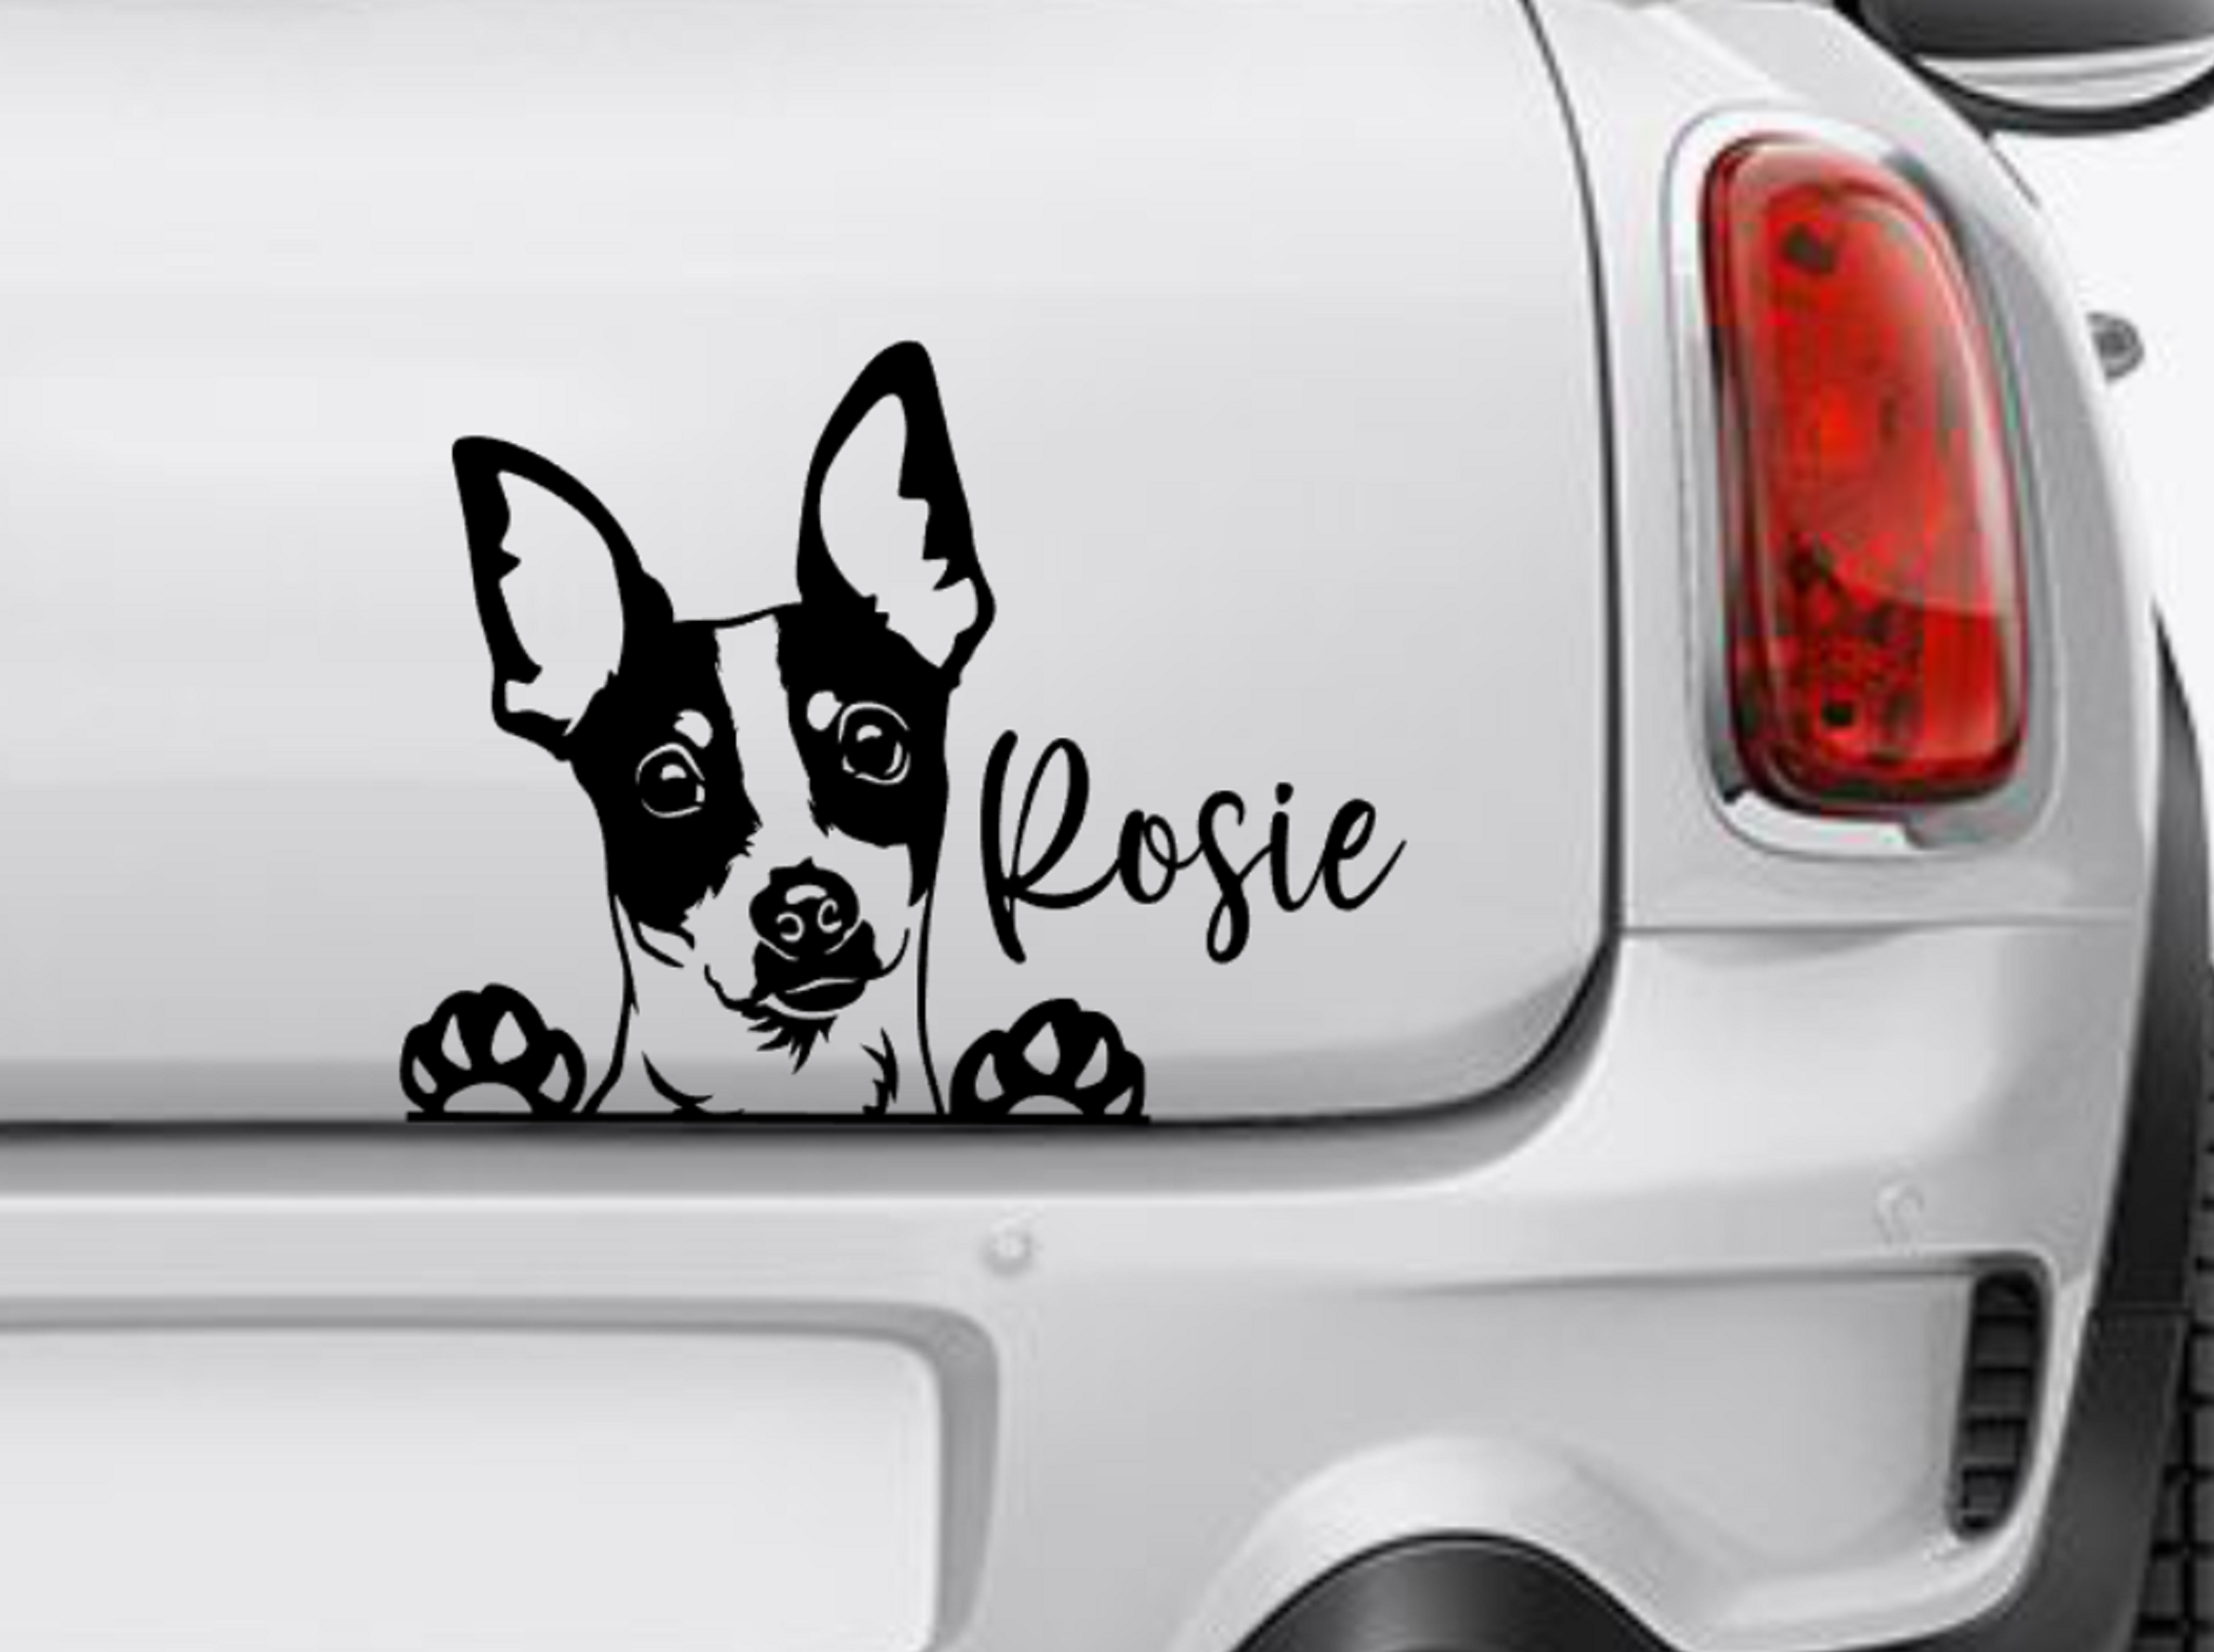 Mini Fox Terrier Peeking Car Decal Foxie Toy Terrier - My Crafty Dog